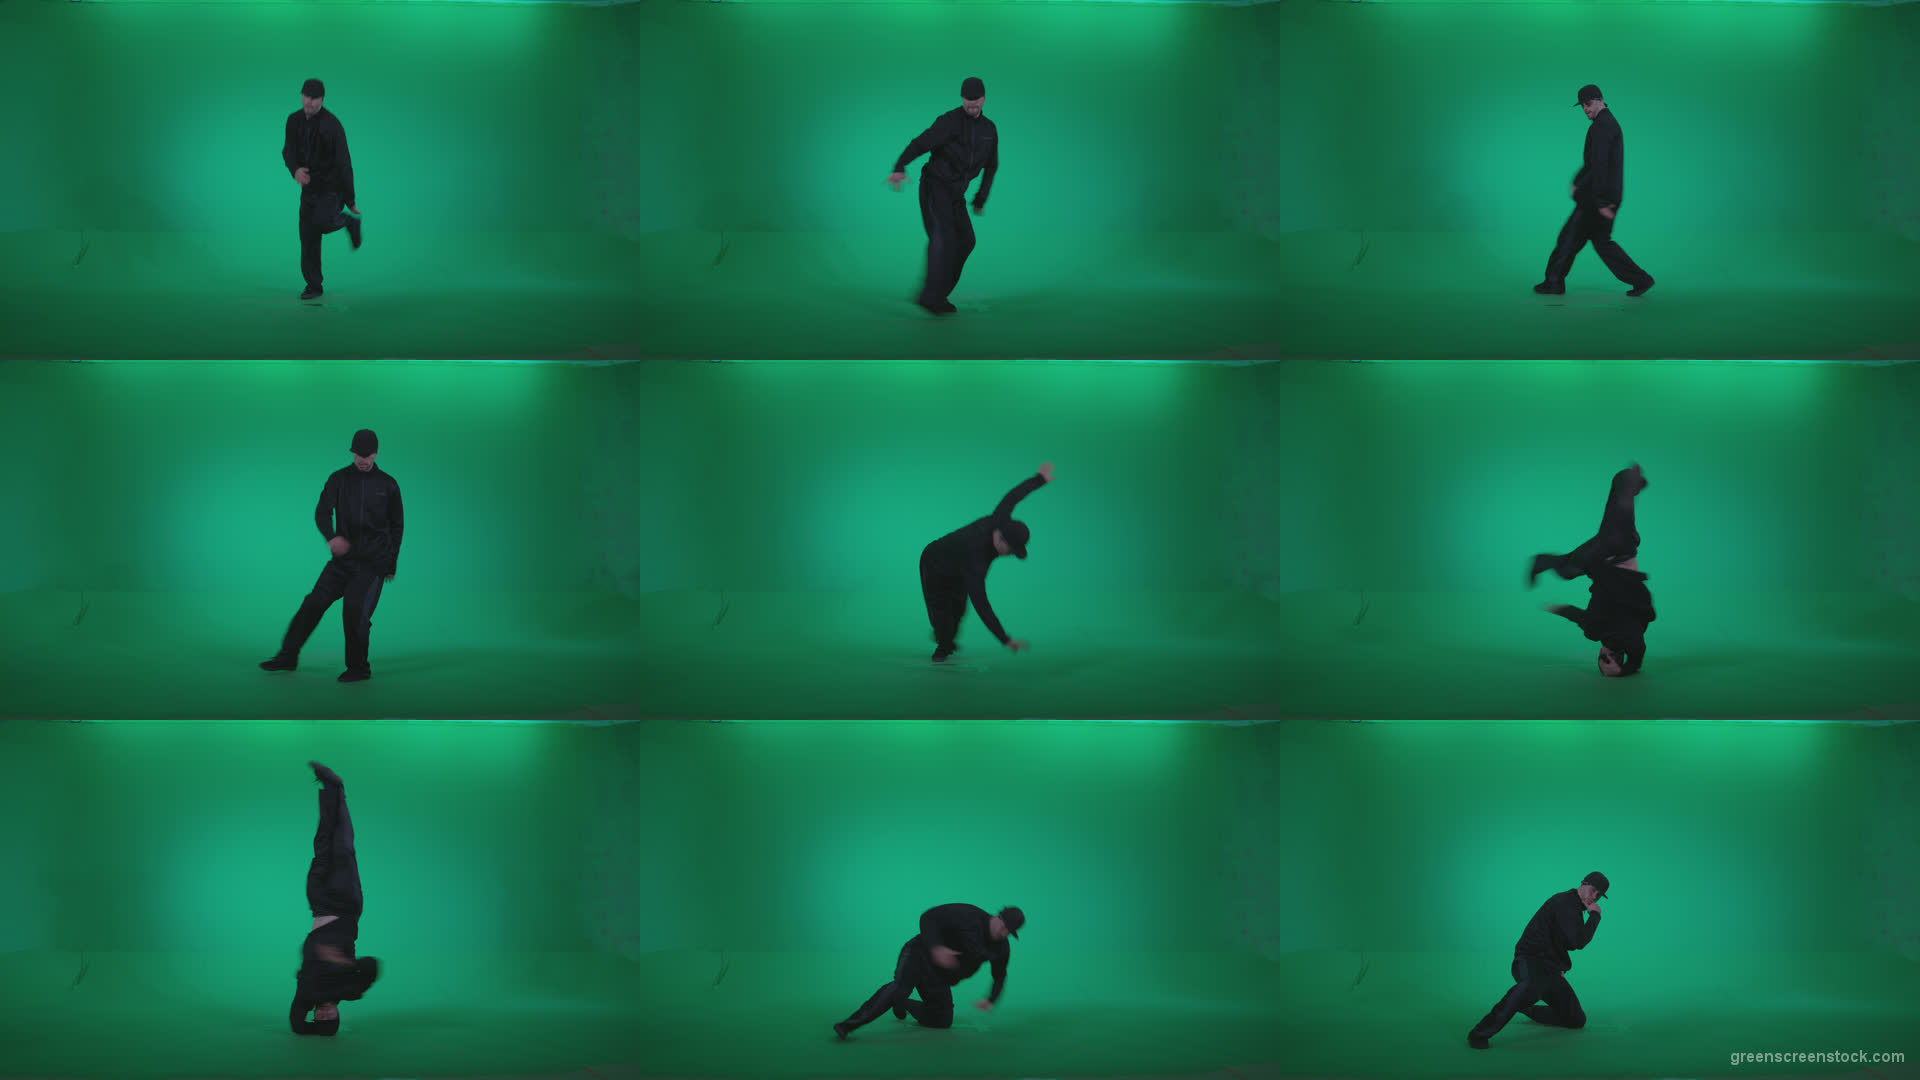 B-Boy-Break-Dance-b5 Green Screen Stock